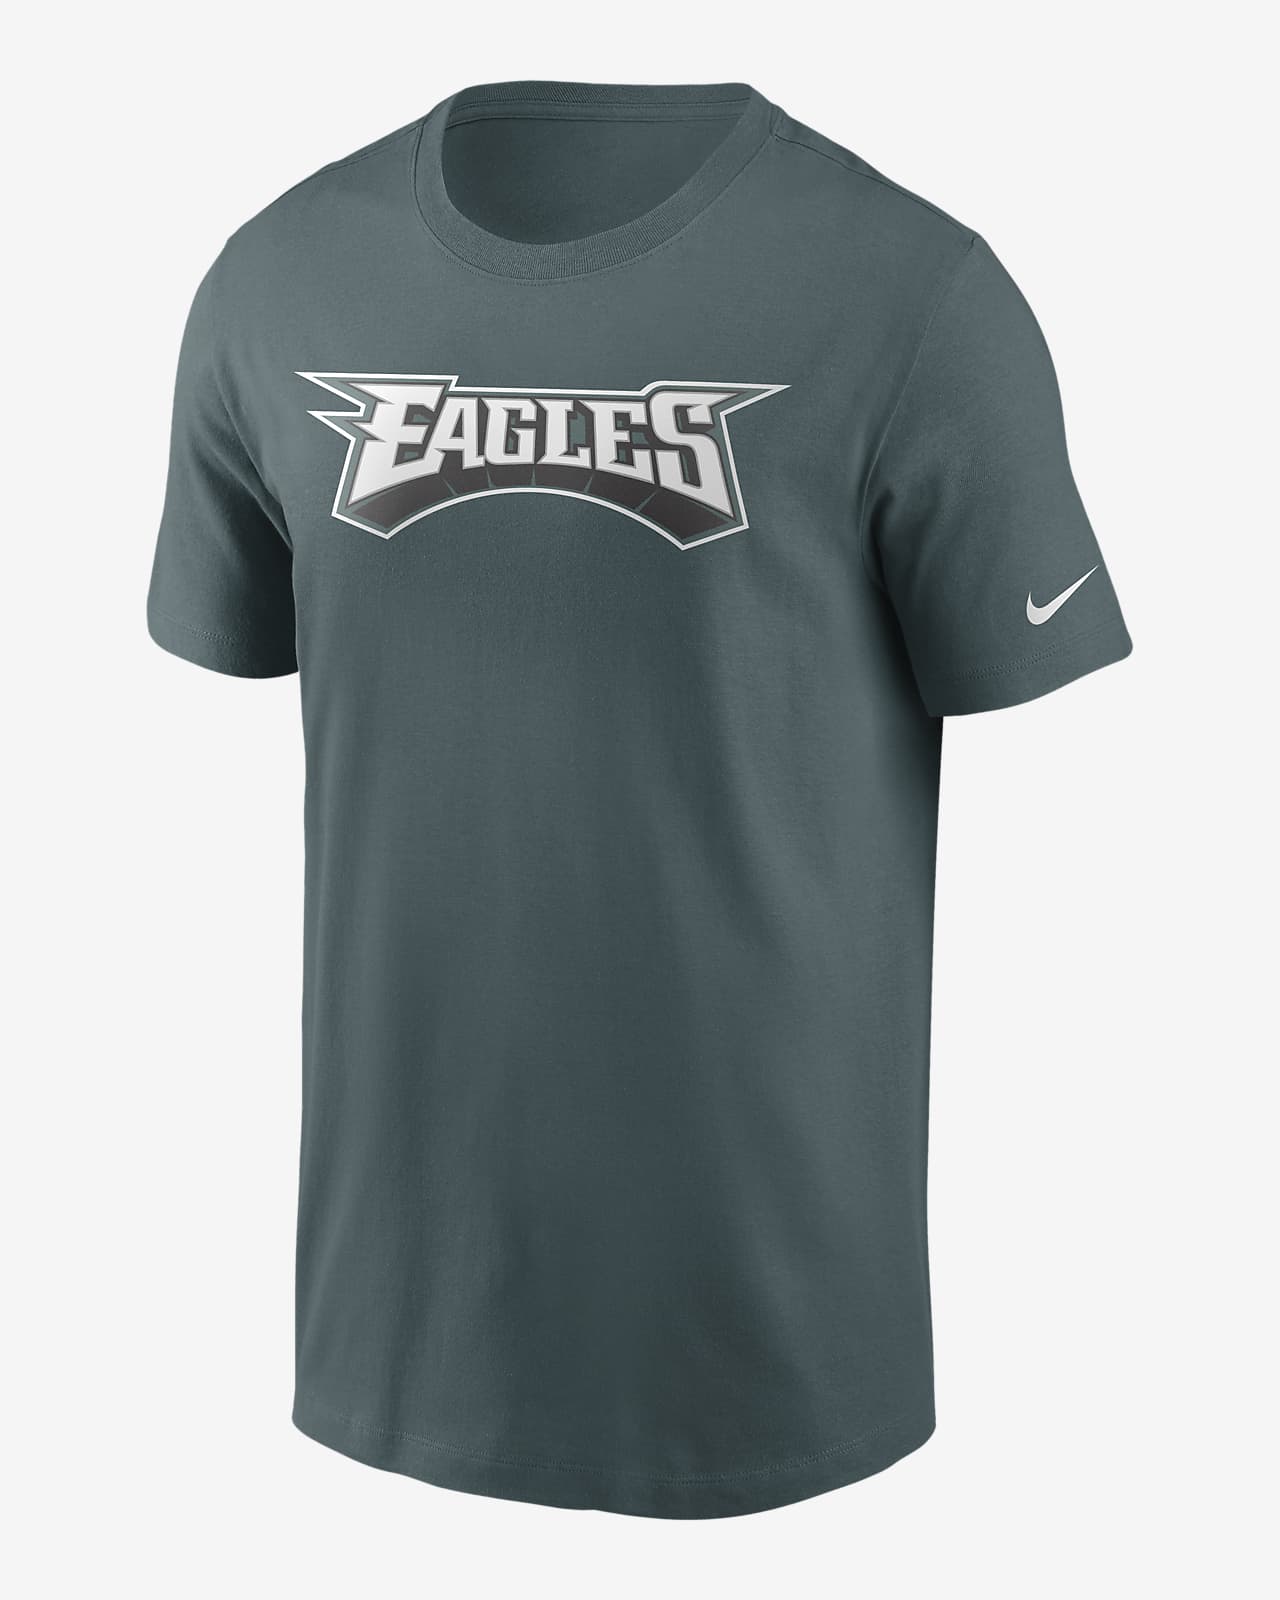 eagles t shirts for men